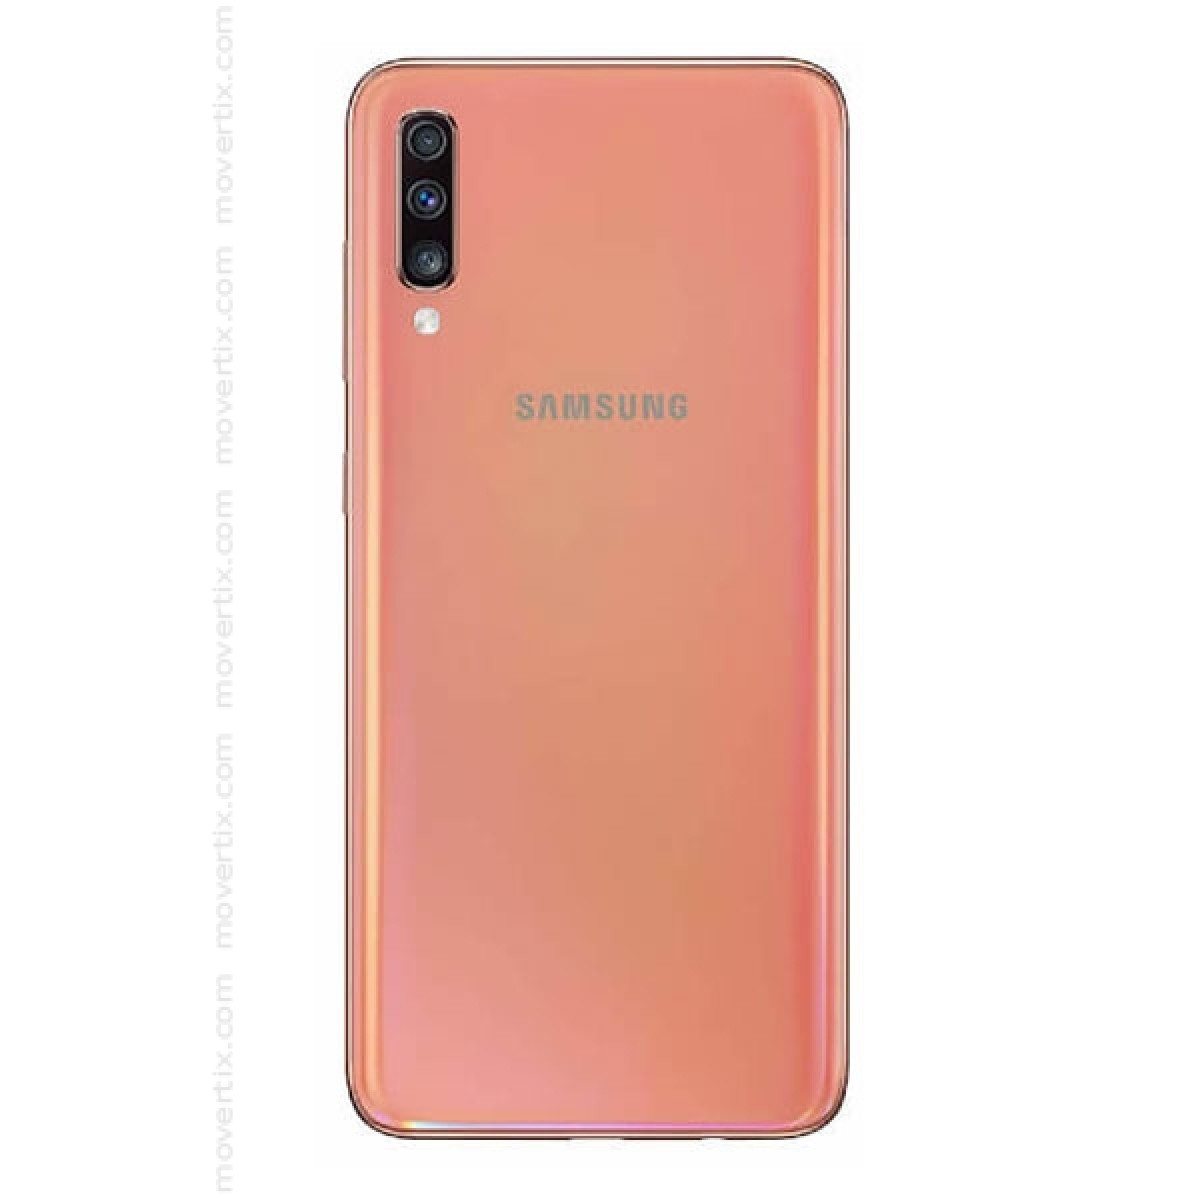 Samsung Galaxy A70 Dual Sim Coral 128gb And 6gb Ram Sm A705f Ds